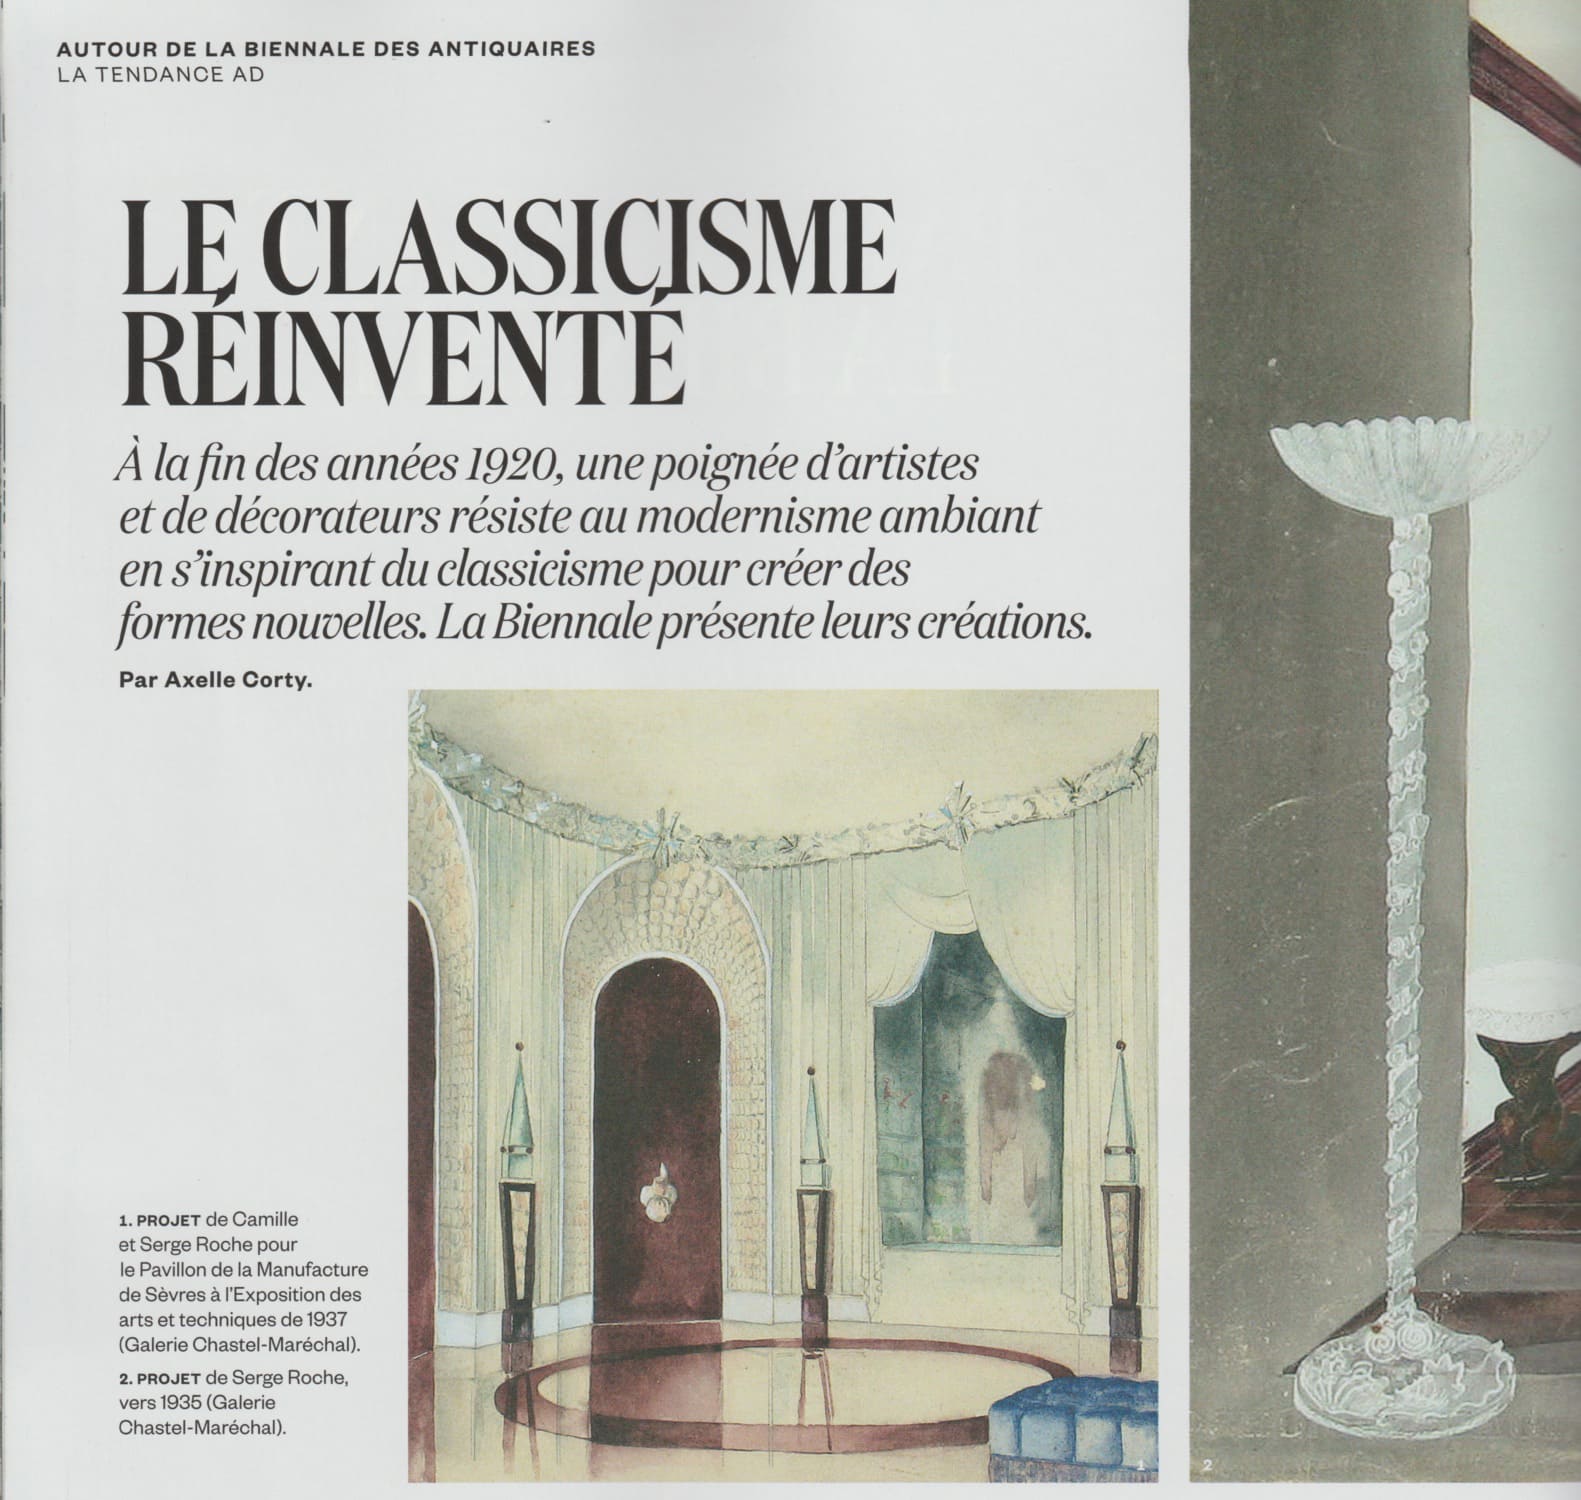 AD, août/septembre 2016 – “Le Classicisme réinventé” – Serge Roche